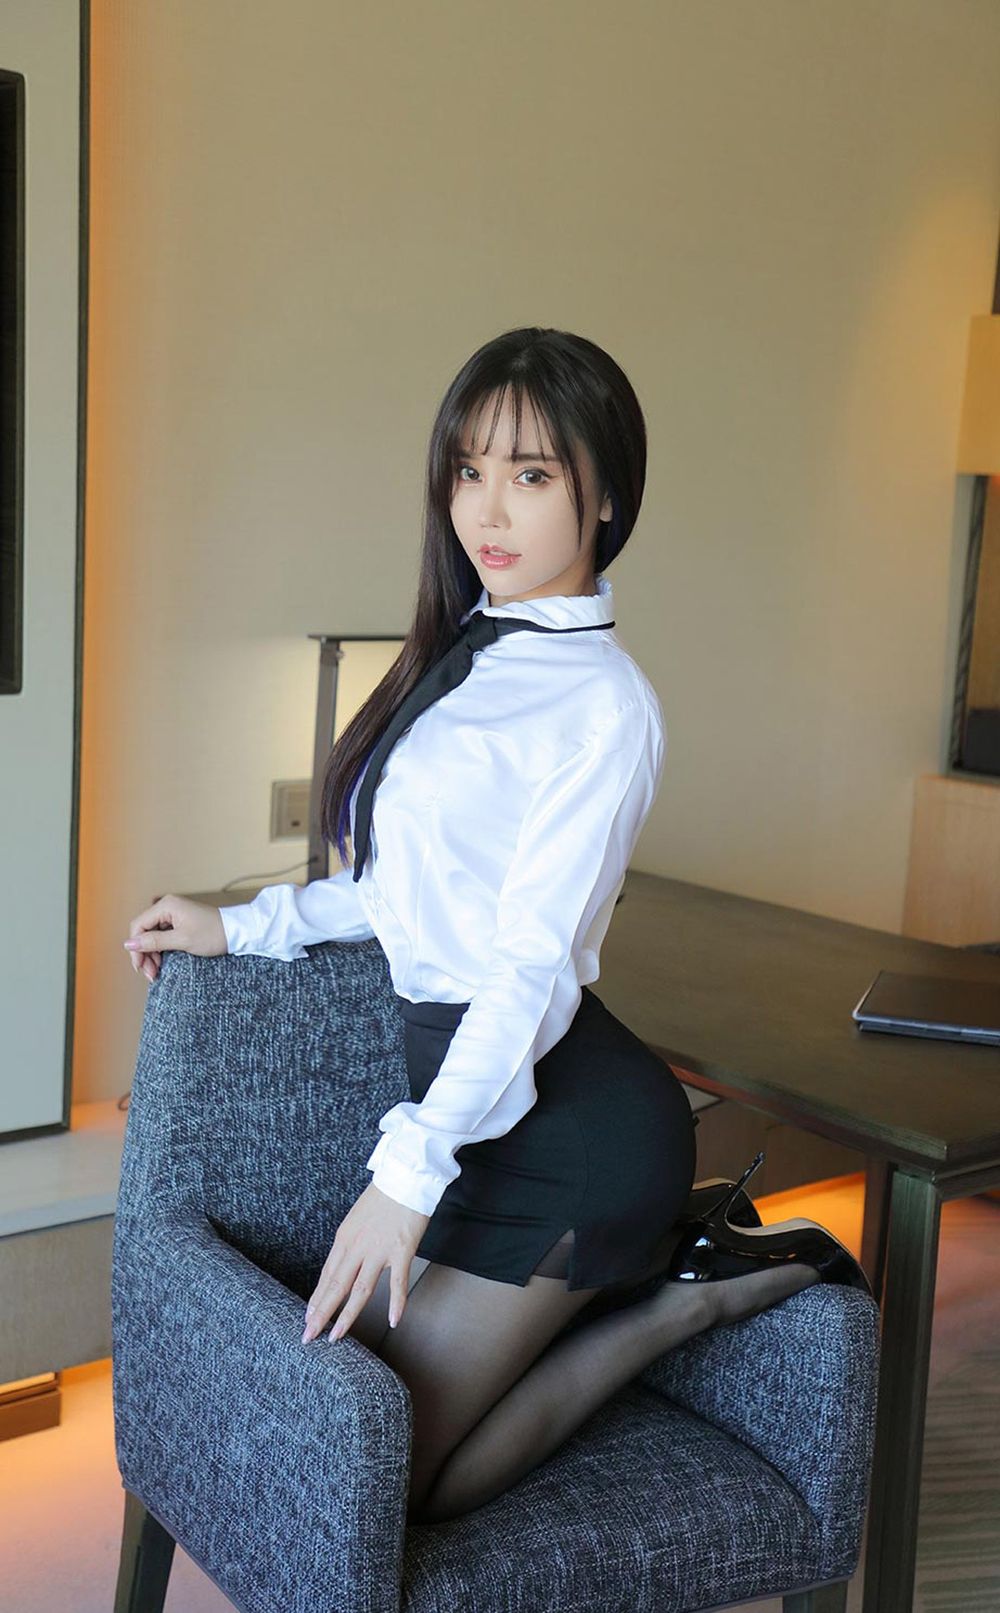 美女模特艾小青白衬衫黑丝美腿职场OL主题性感写真